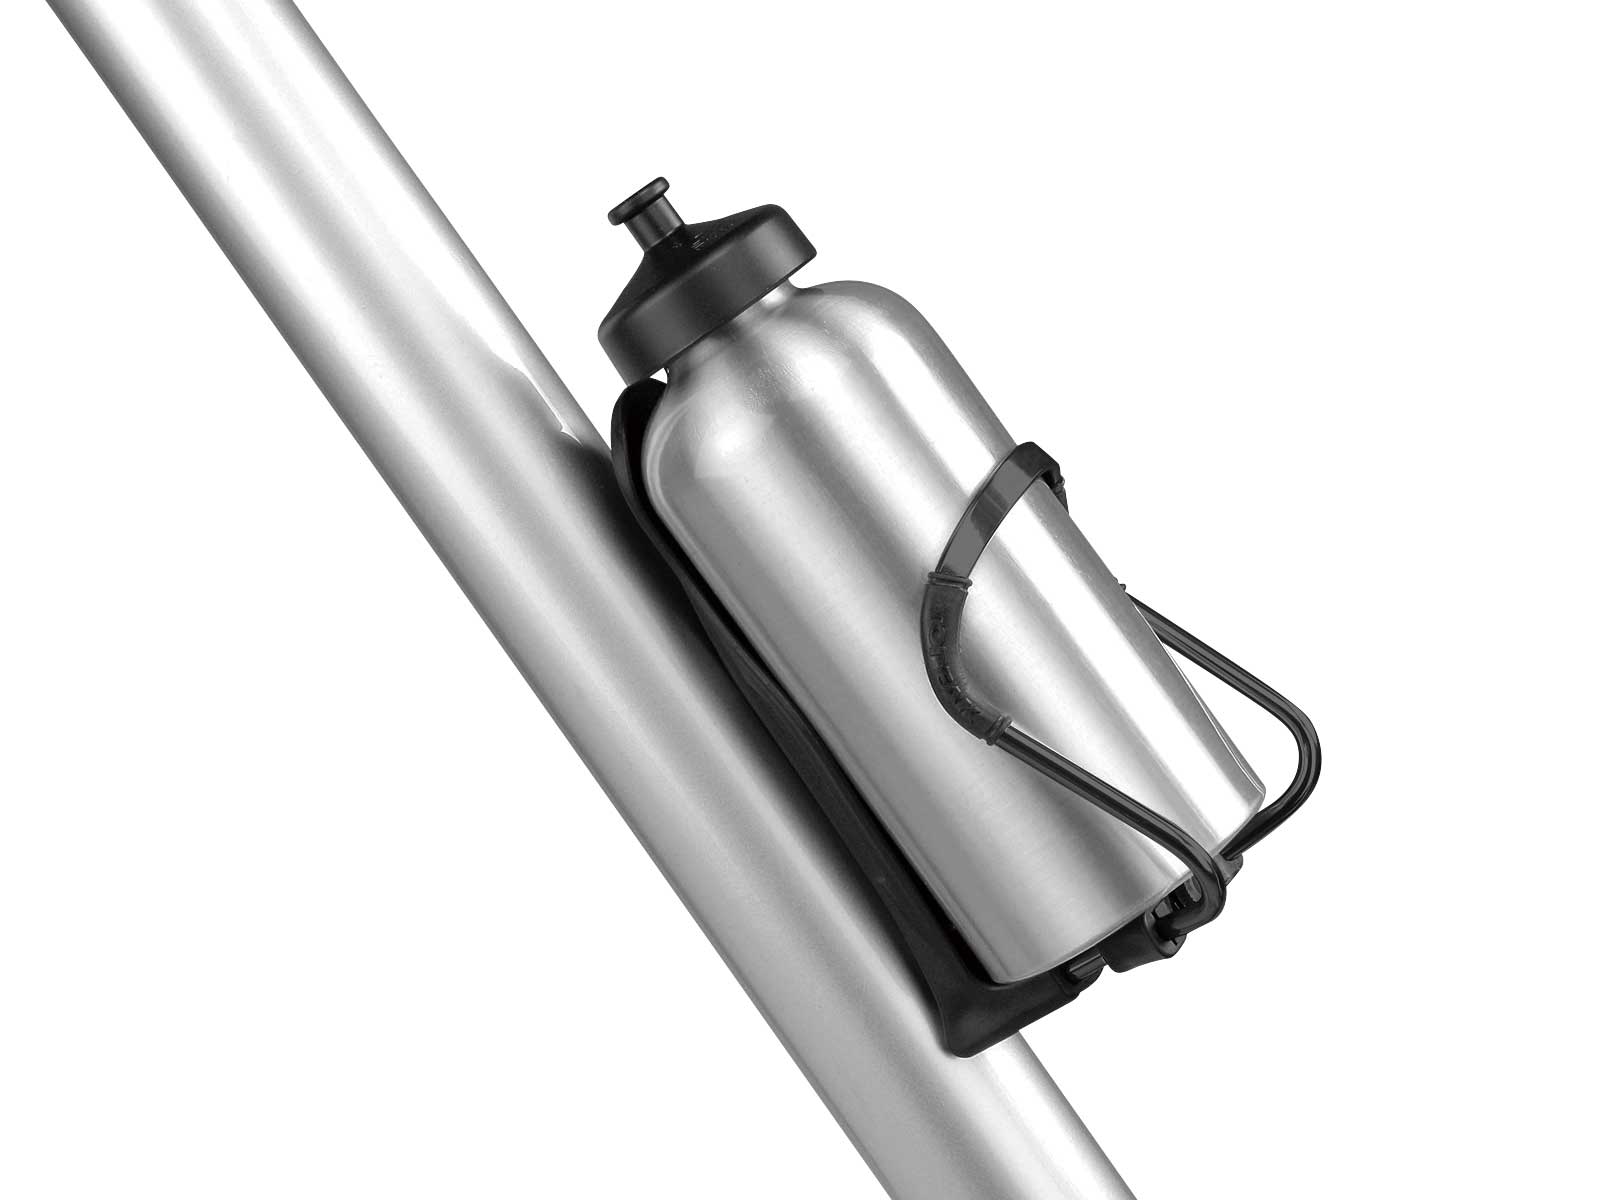 Topeak TMD06B Modula Cage II Adjustable Bike Bicycle Cycling Water Bottle Holder